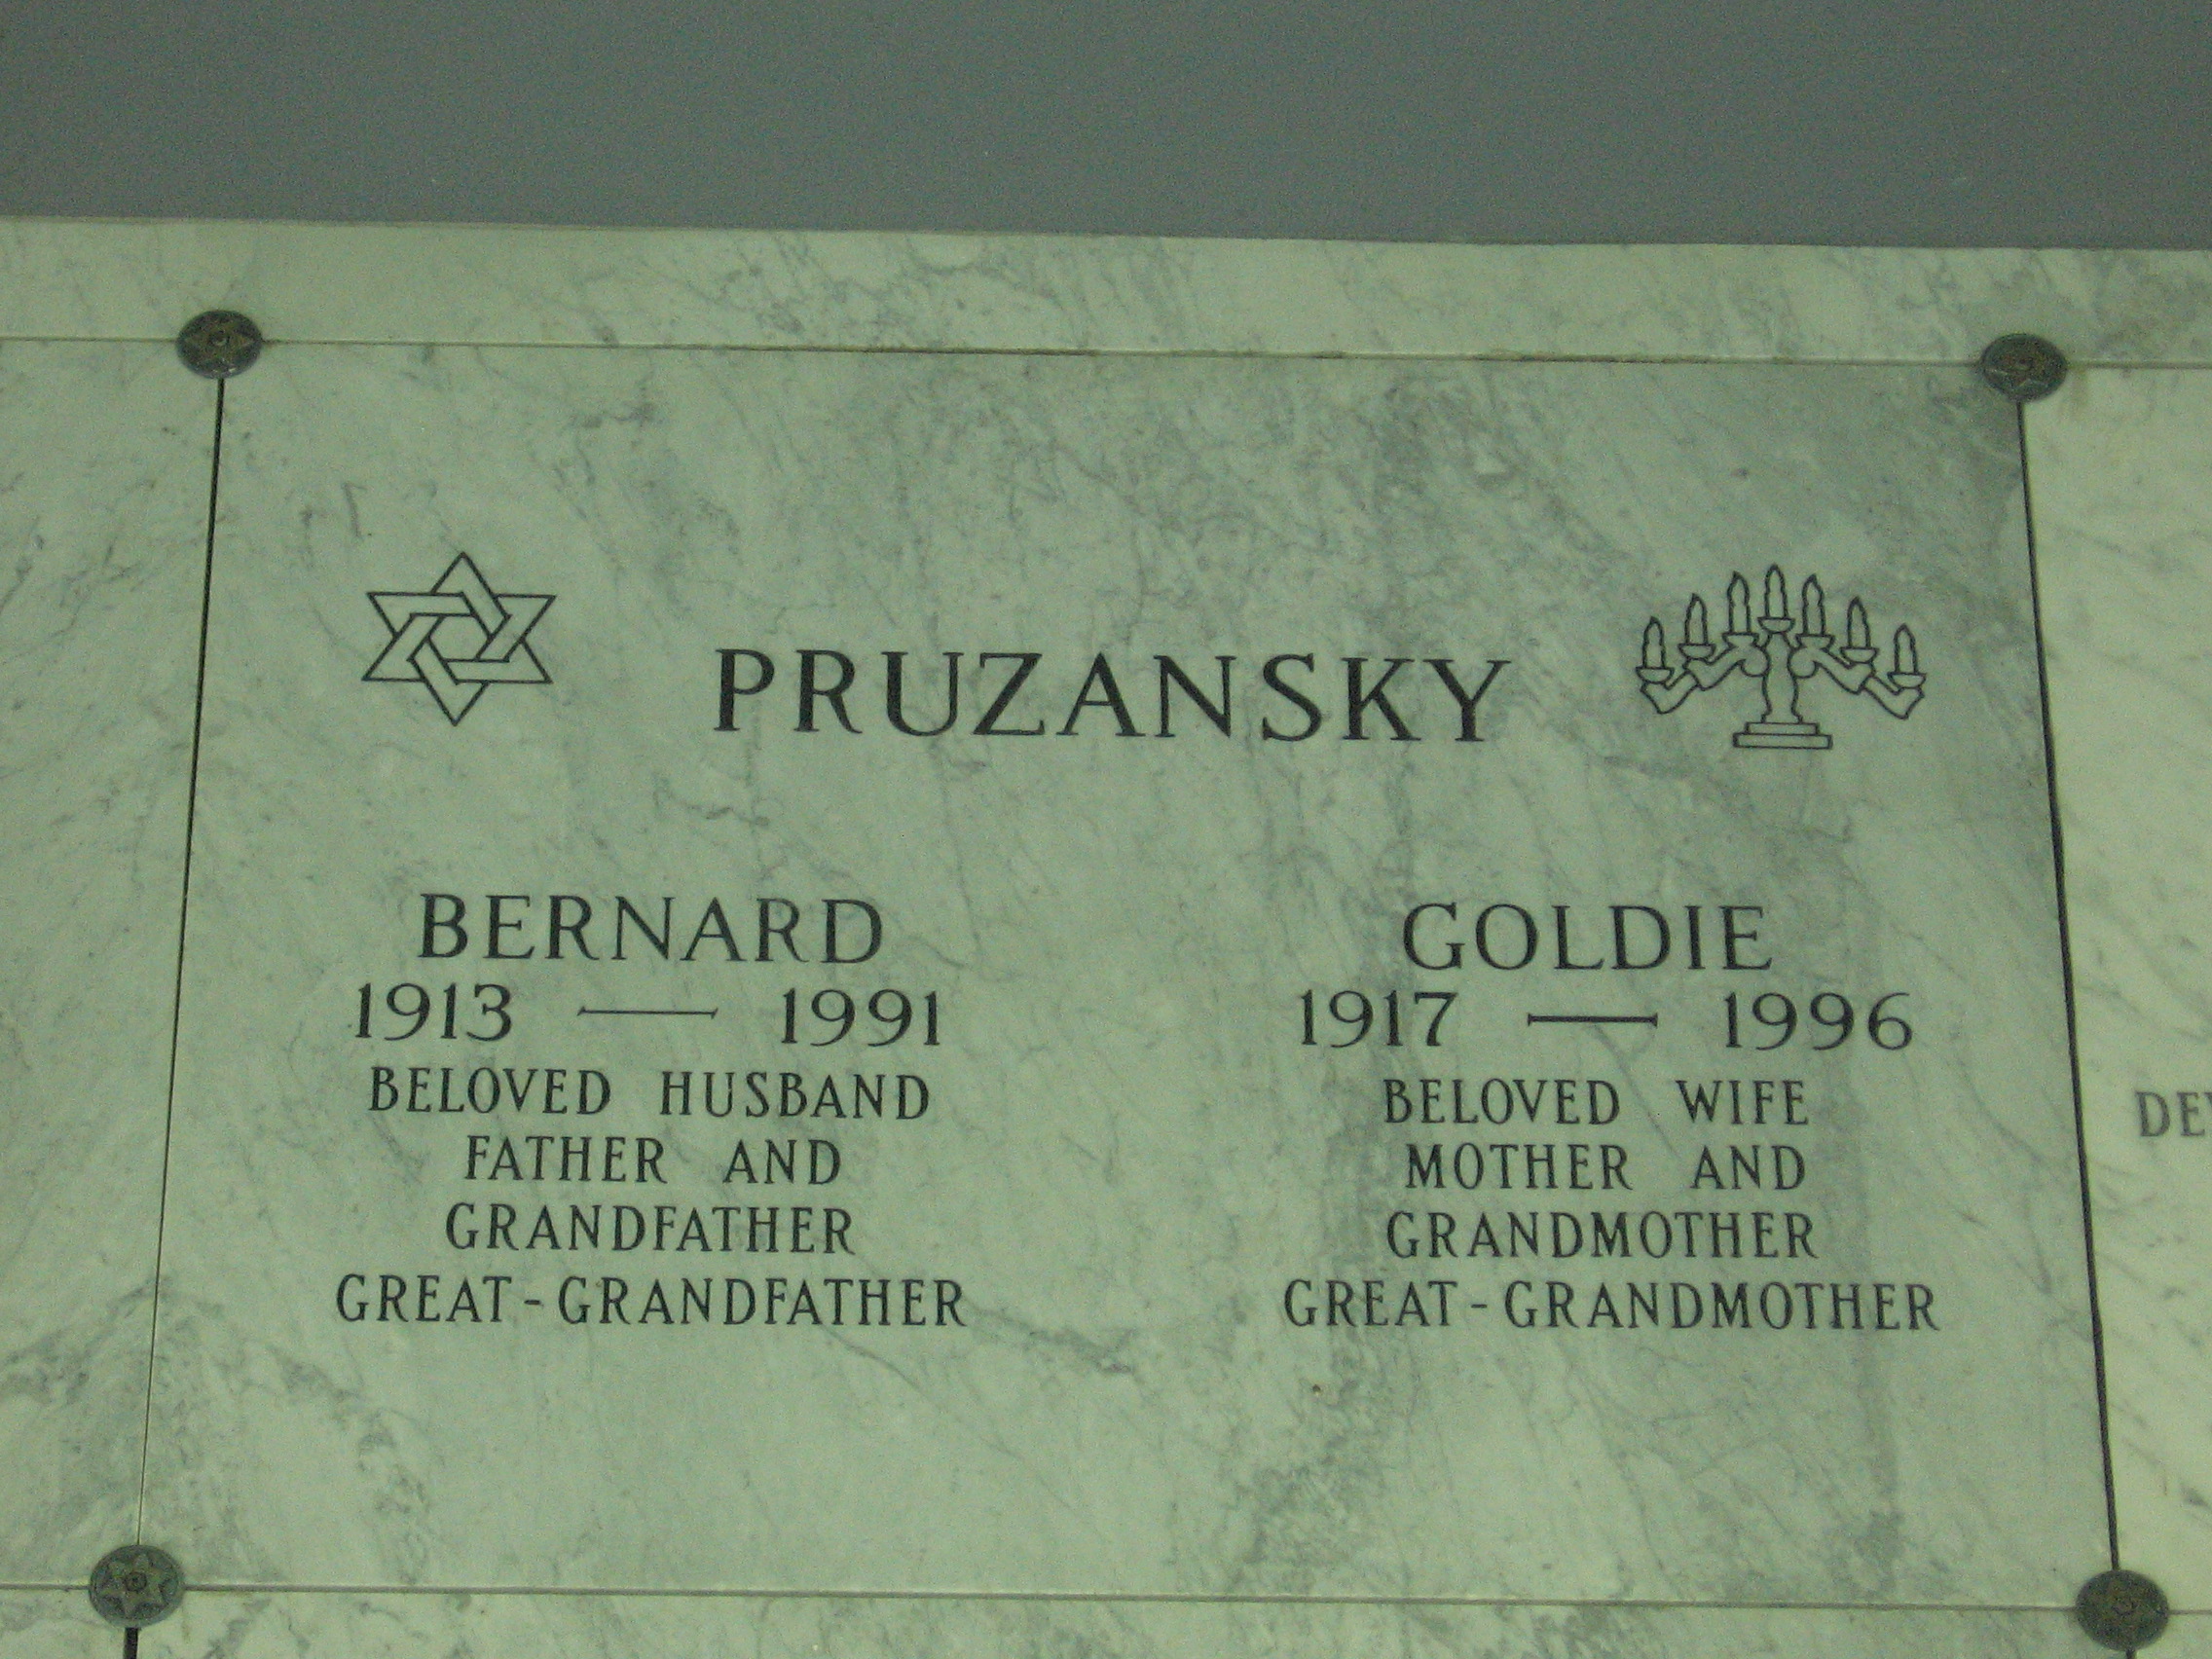 Bernard Pruzansky